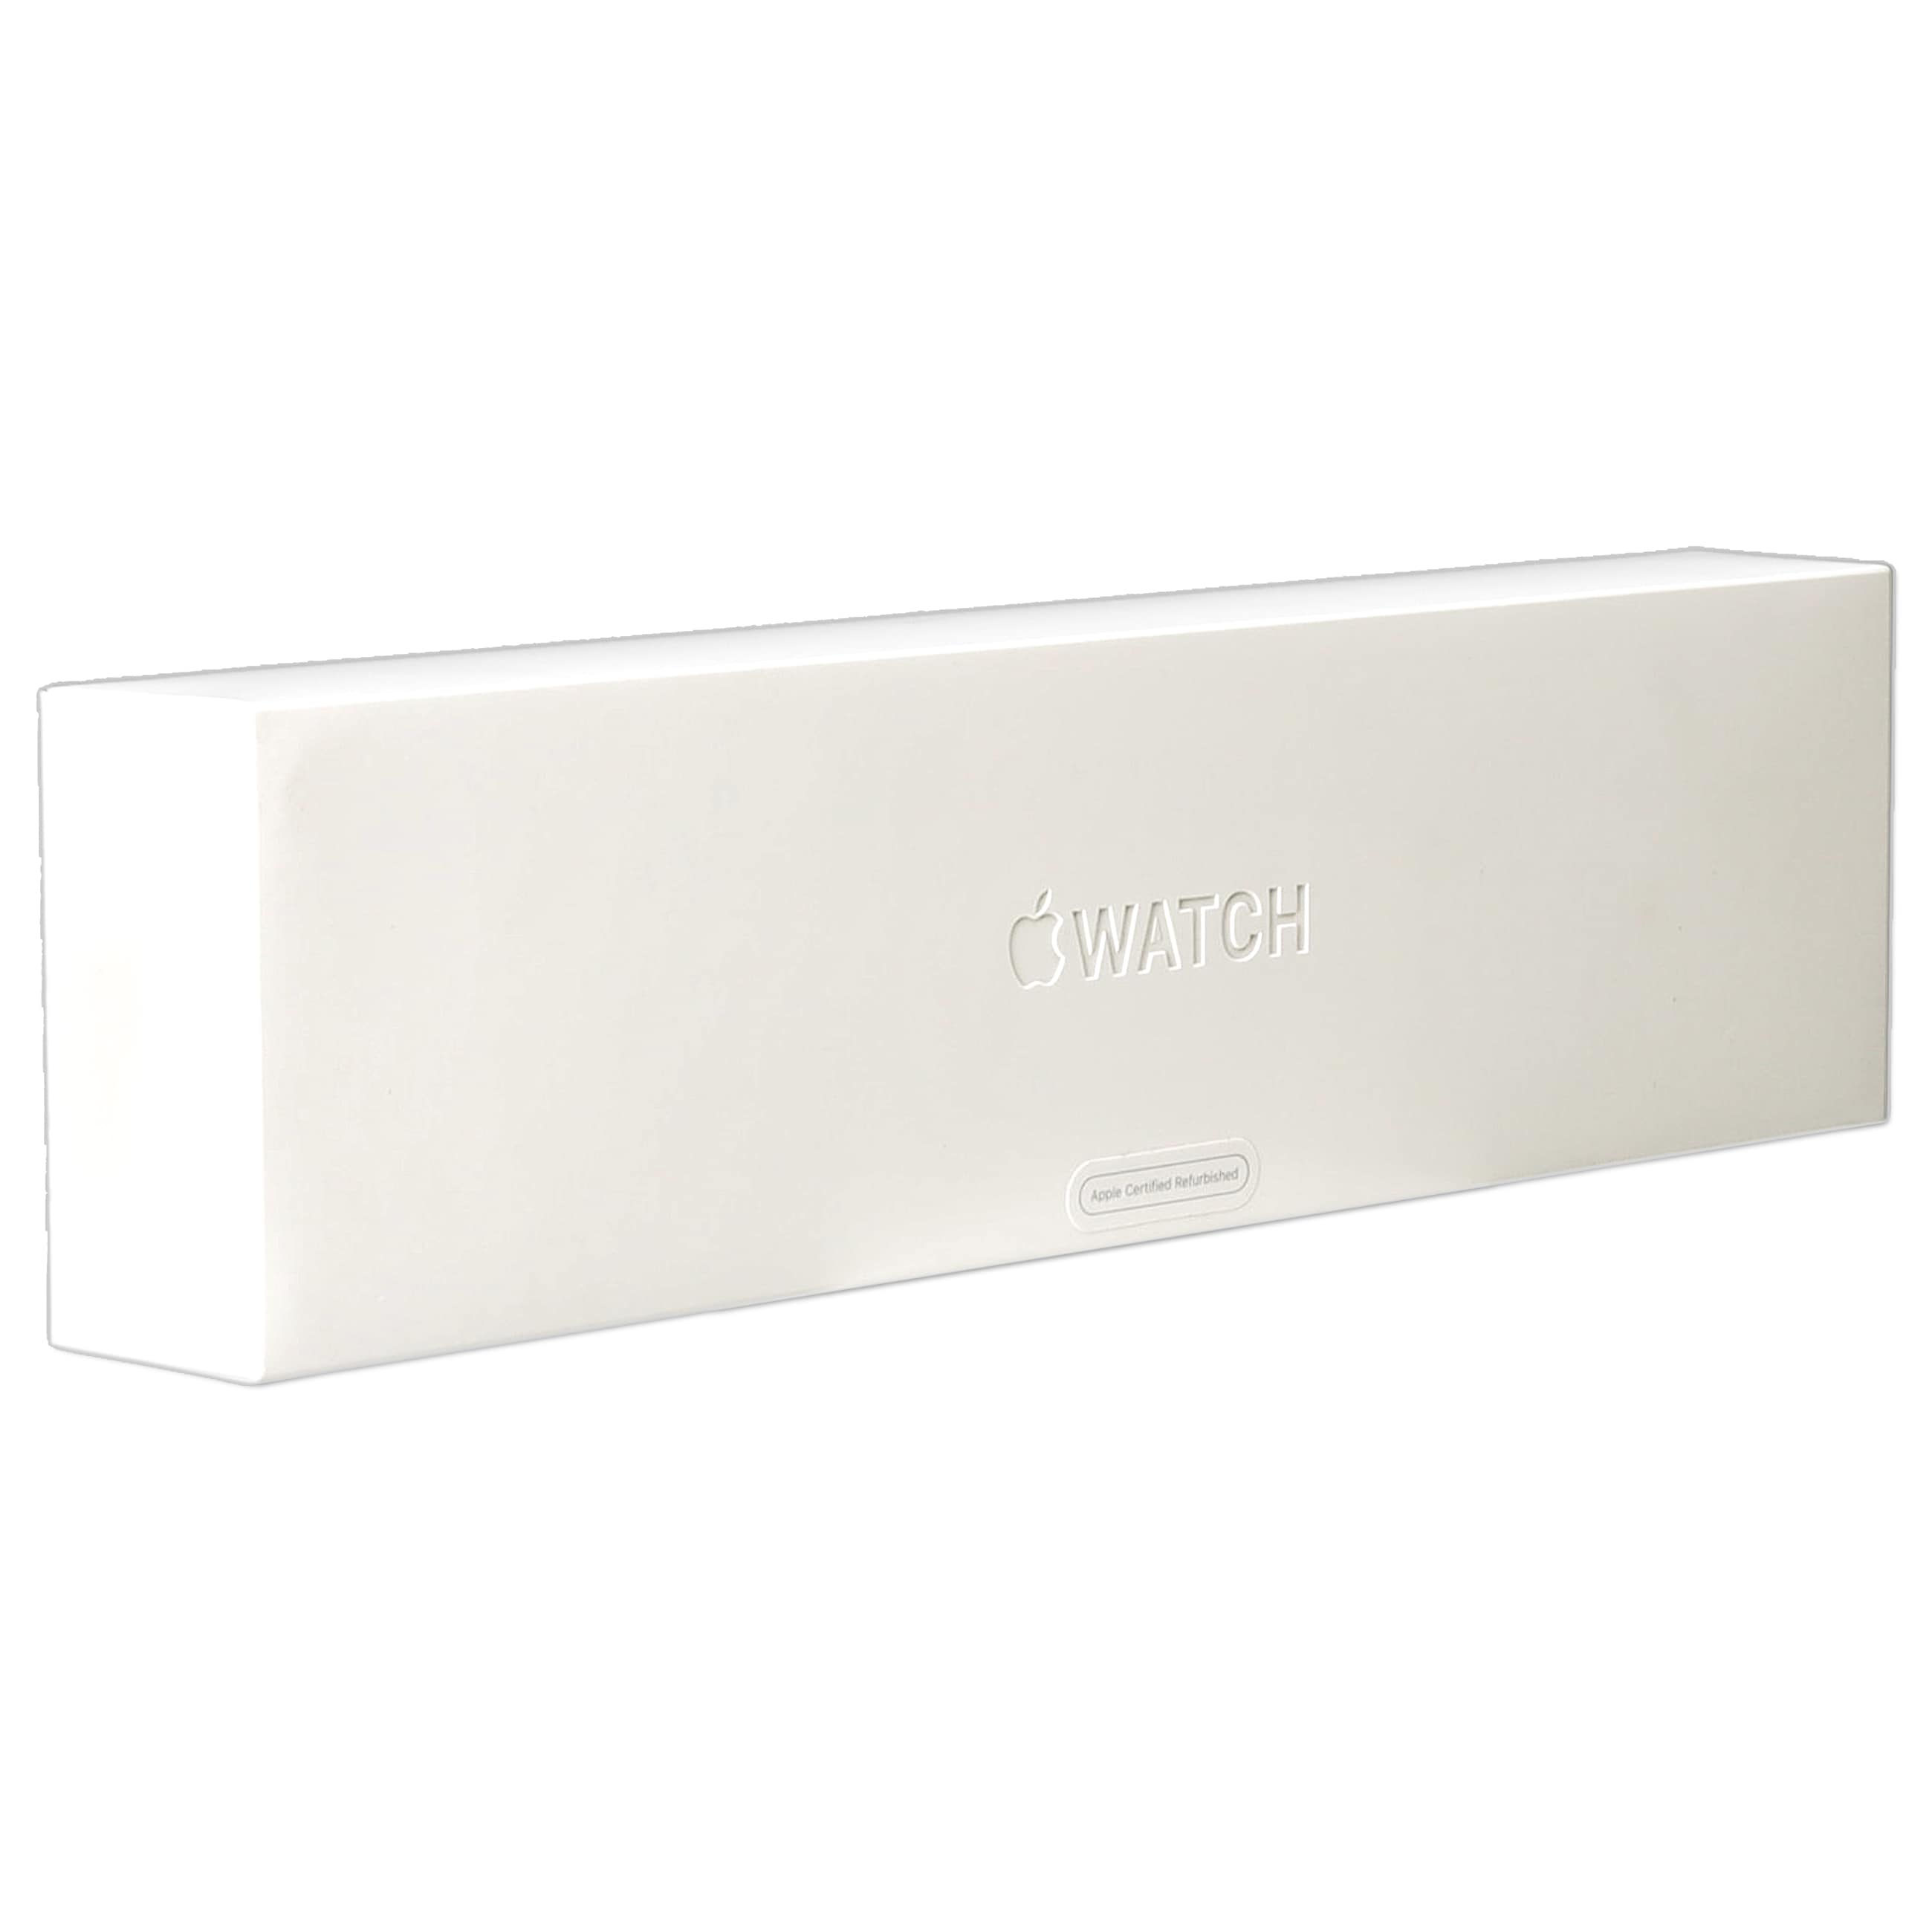 Apple Watch Series 6 LTE (GPS) - Smartwatch - Graphit - Gebraucht